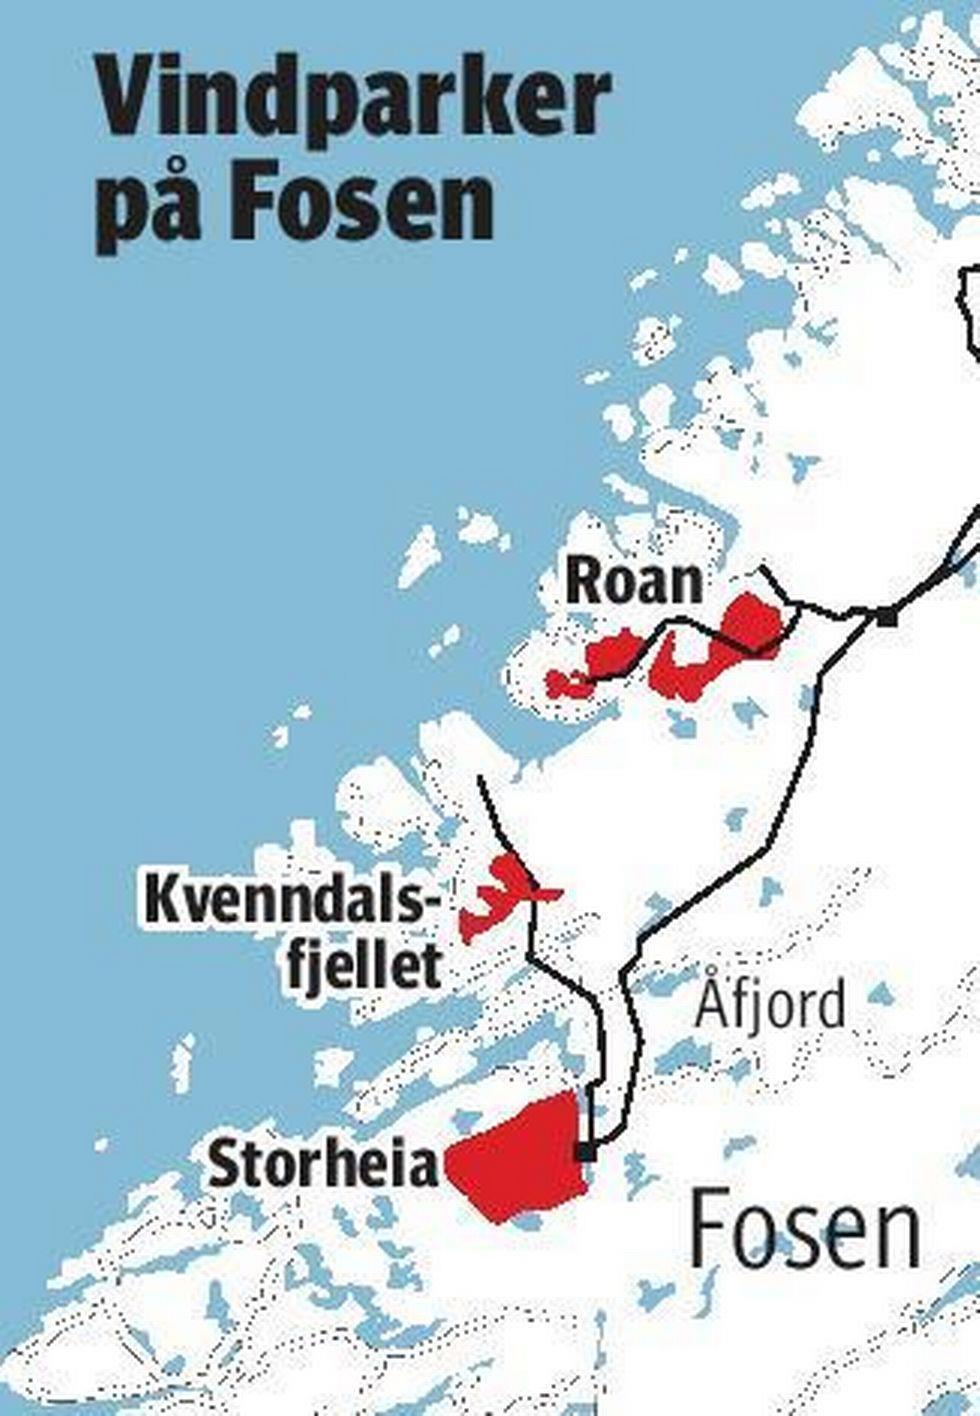 Vindkraftplanene på Fosen Fosen Vind, som eies av Statkraft, Agder Energi, NTE og Trønderenergi, planlegger å fatte en investeringsbeslutning for vindparkene Storheia, Roan og Kvenndalsfjellet i juni.